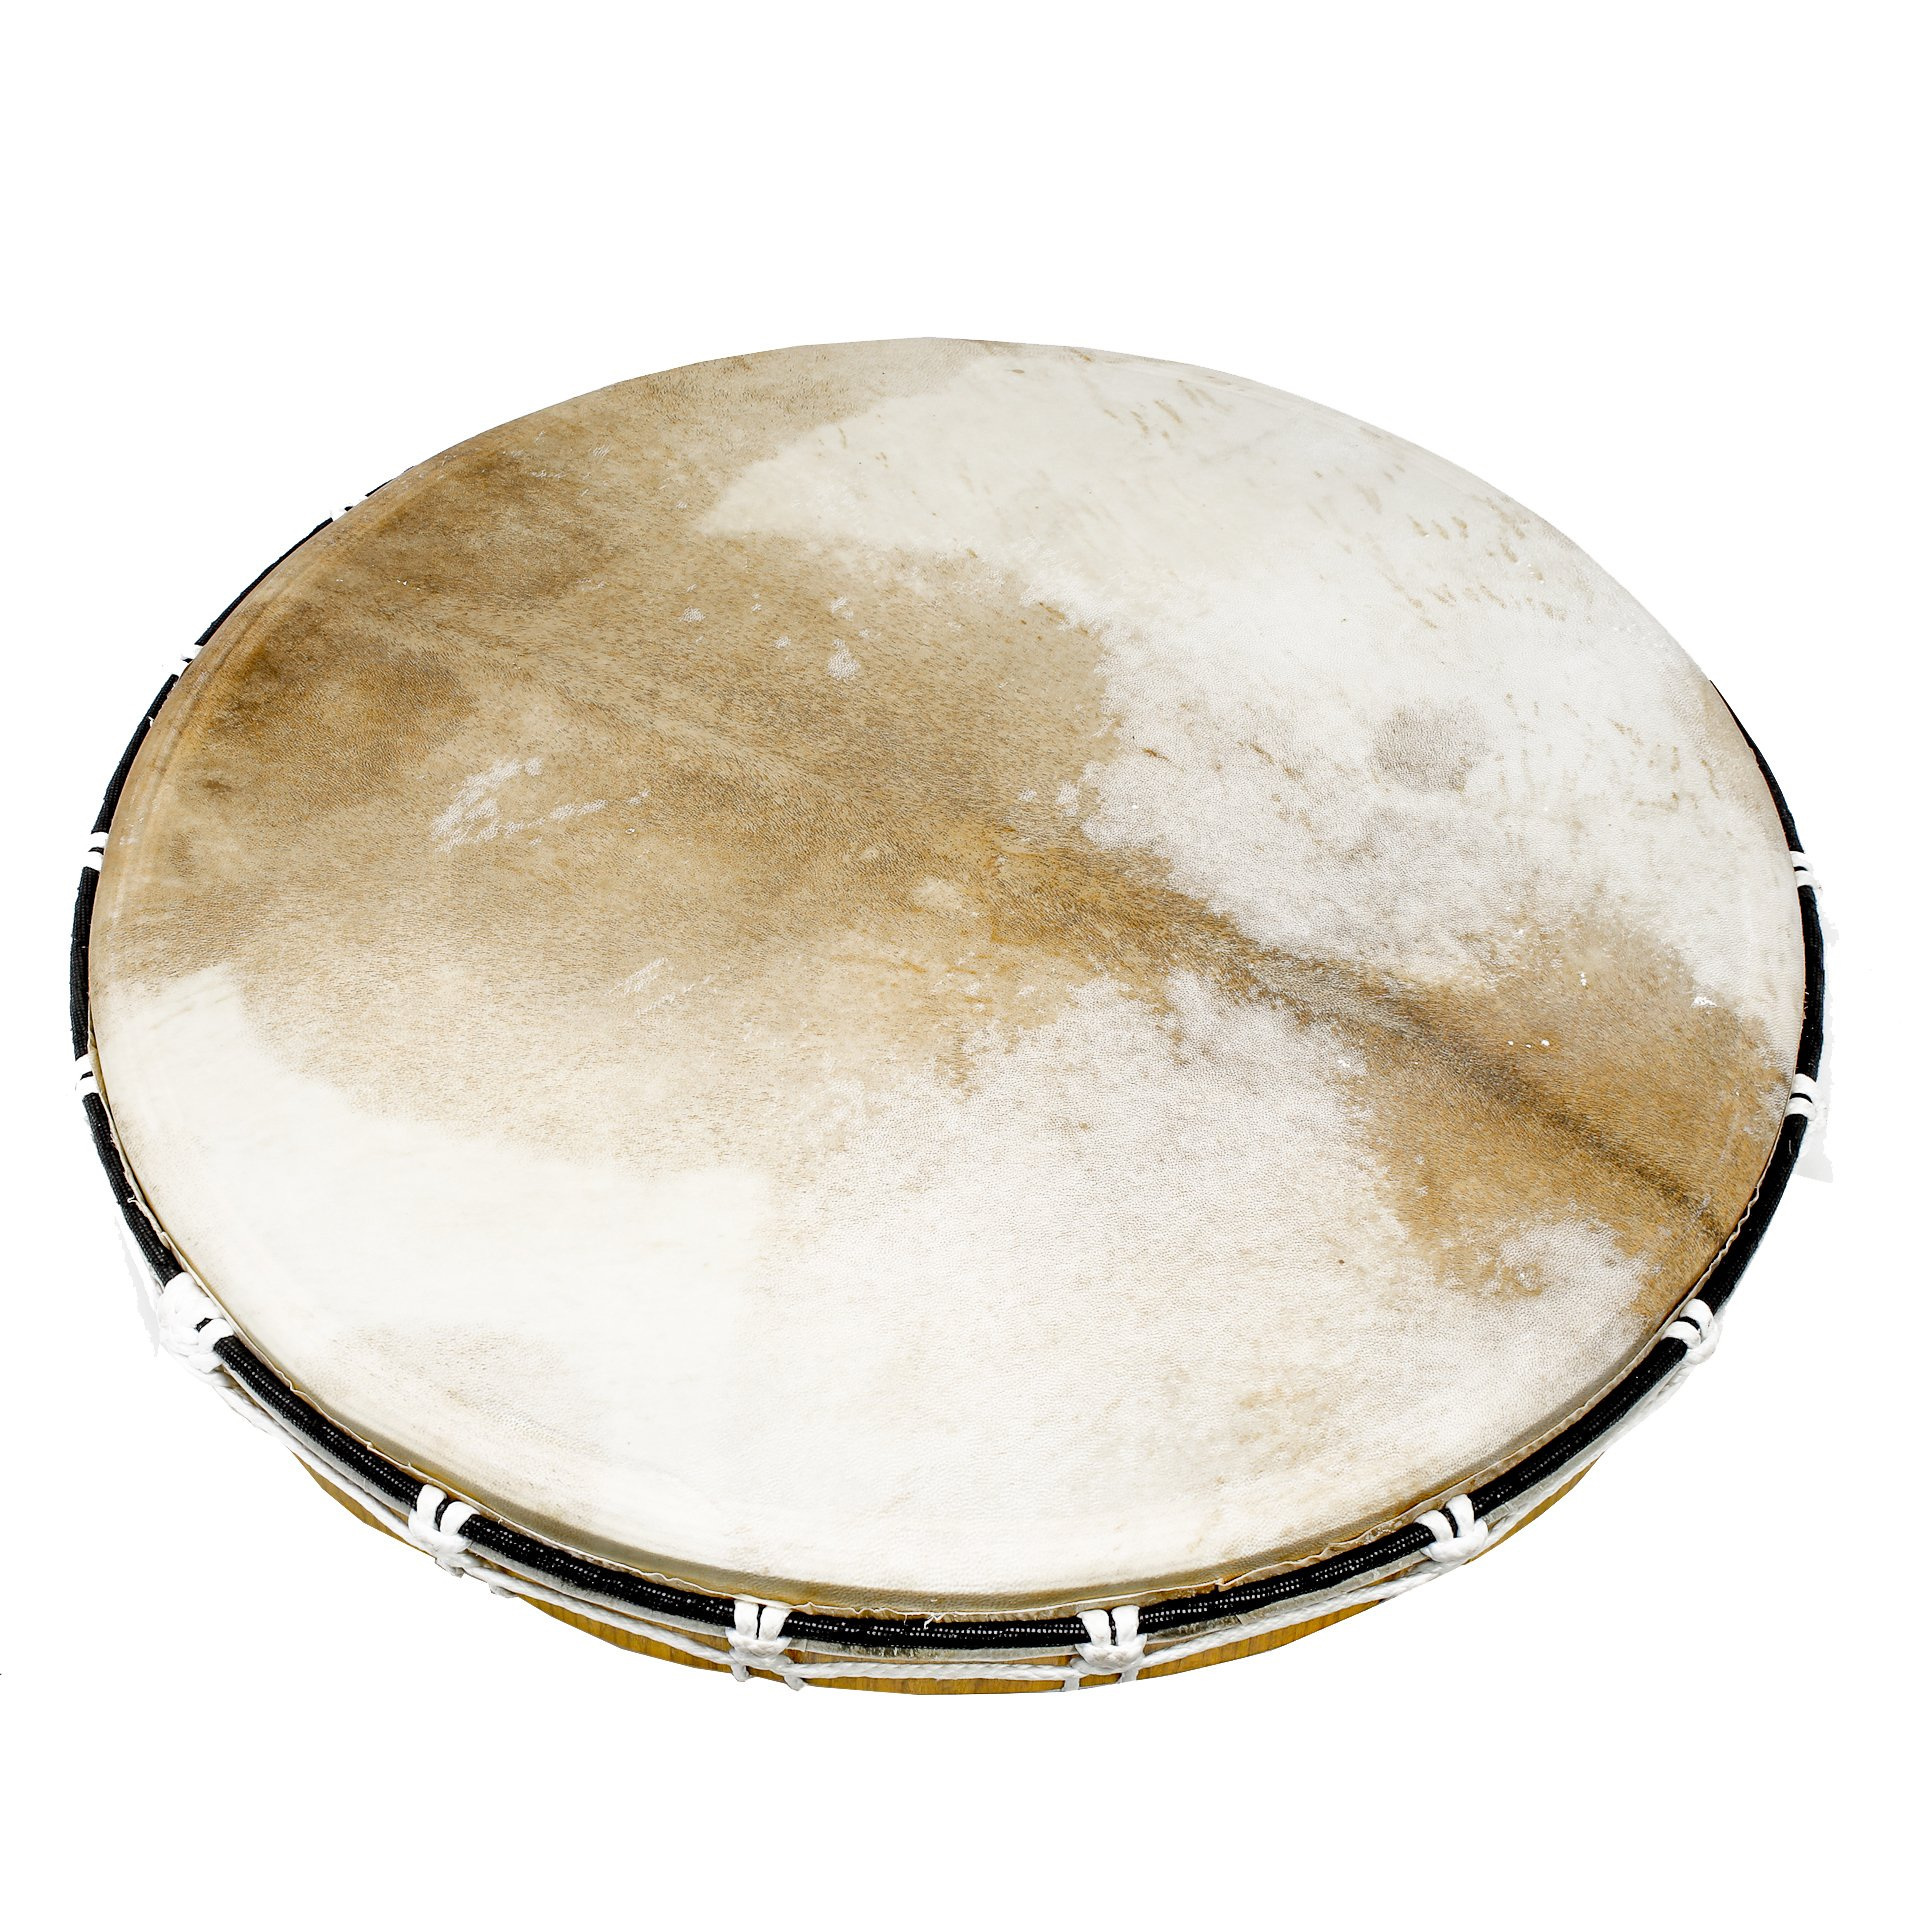 Vermaken astronomie formaat Drums – Merlyn | The Spirit of Sound & Music | webshop